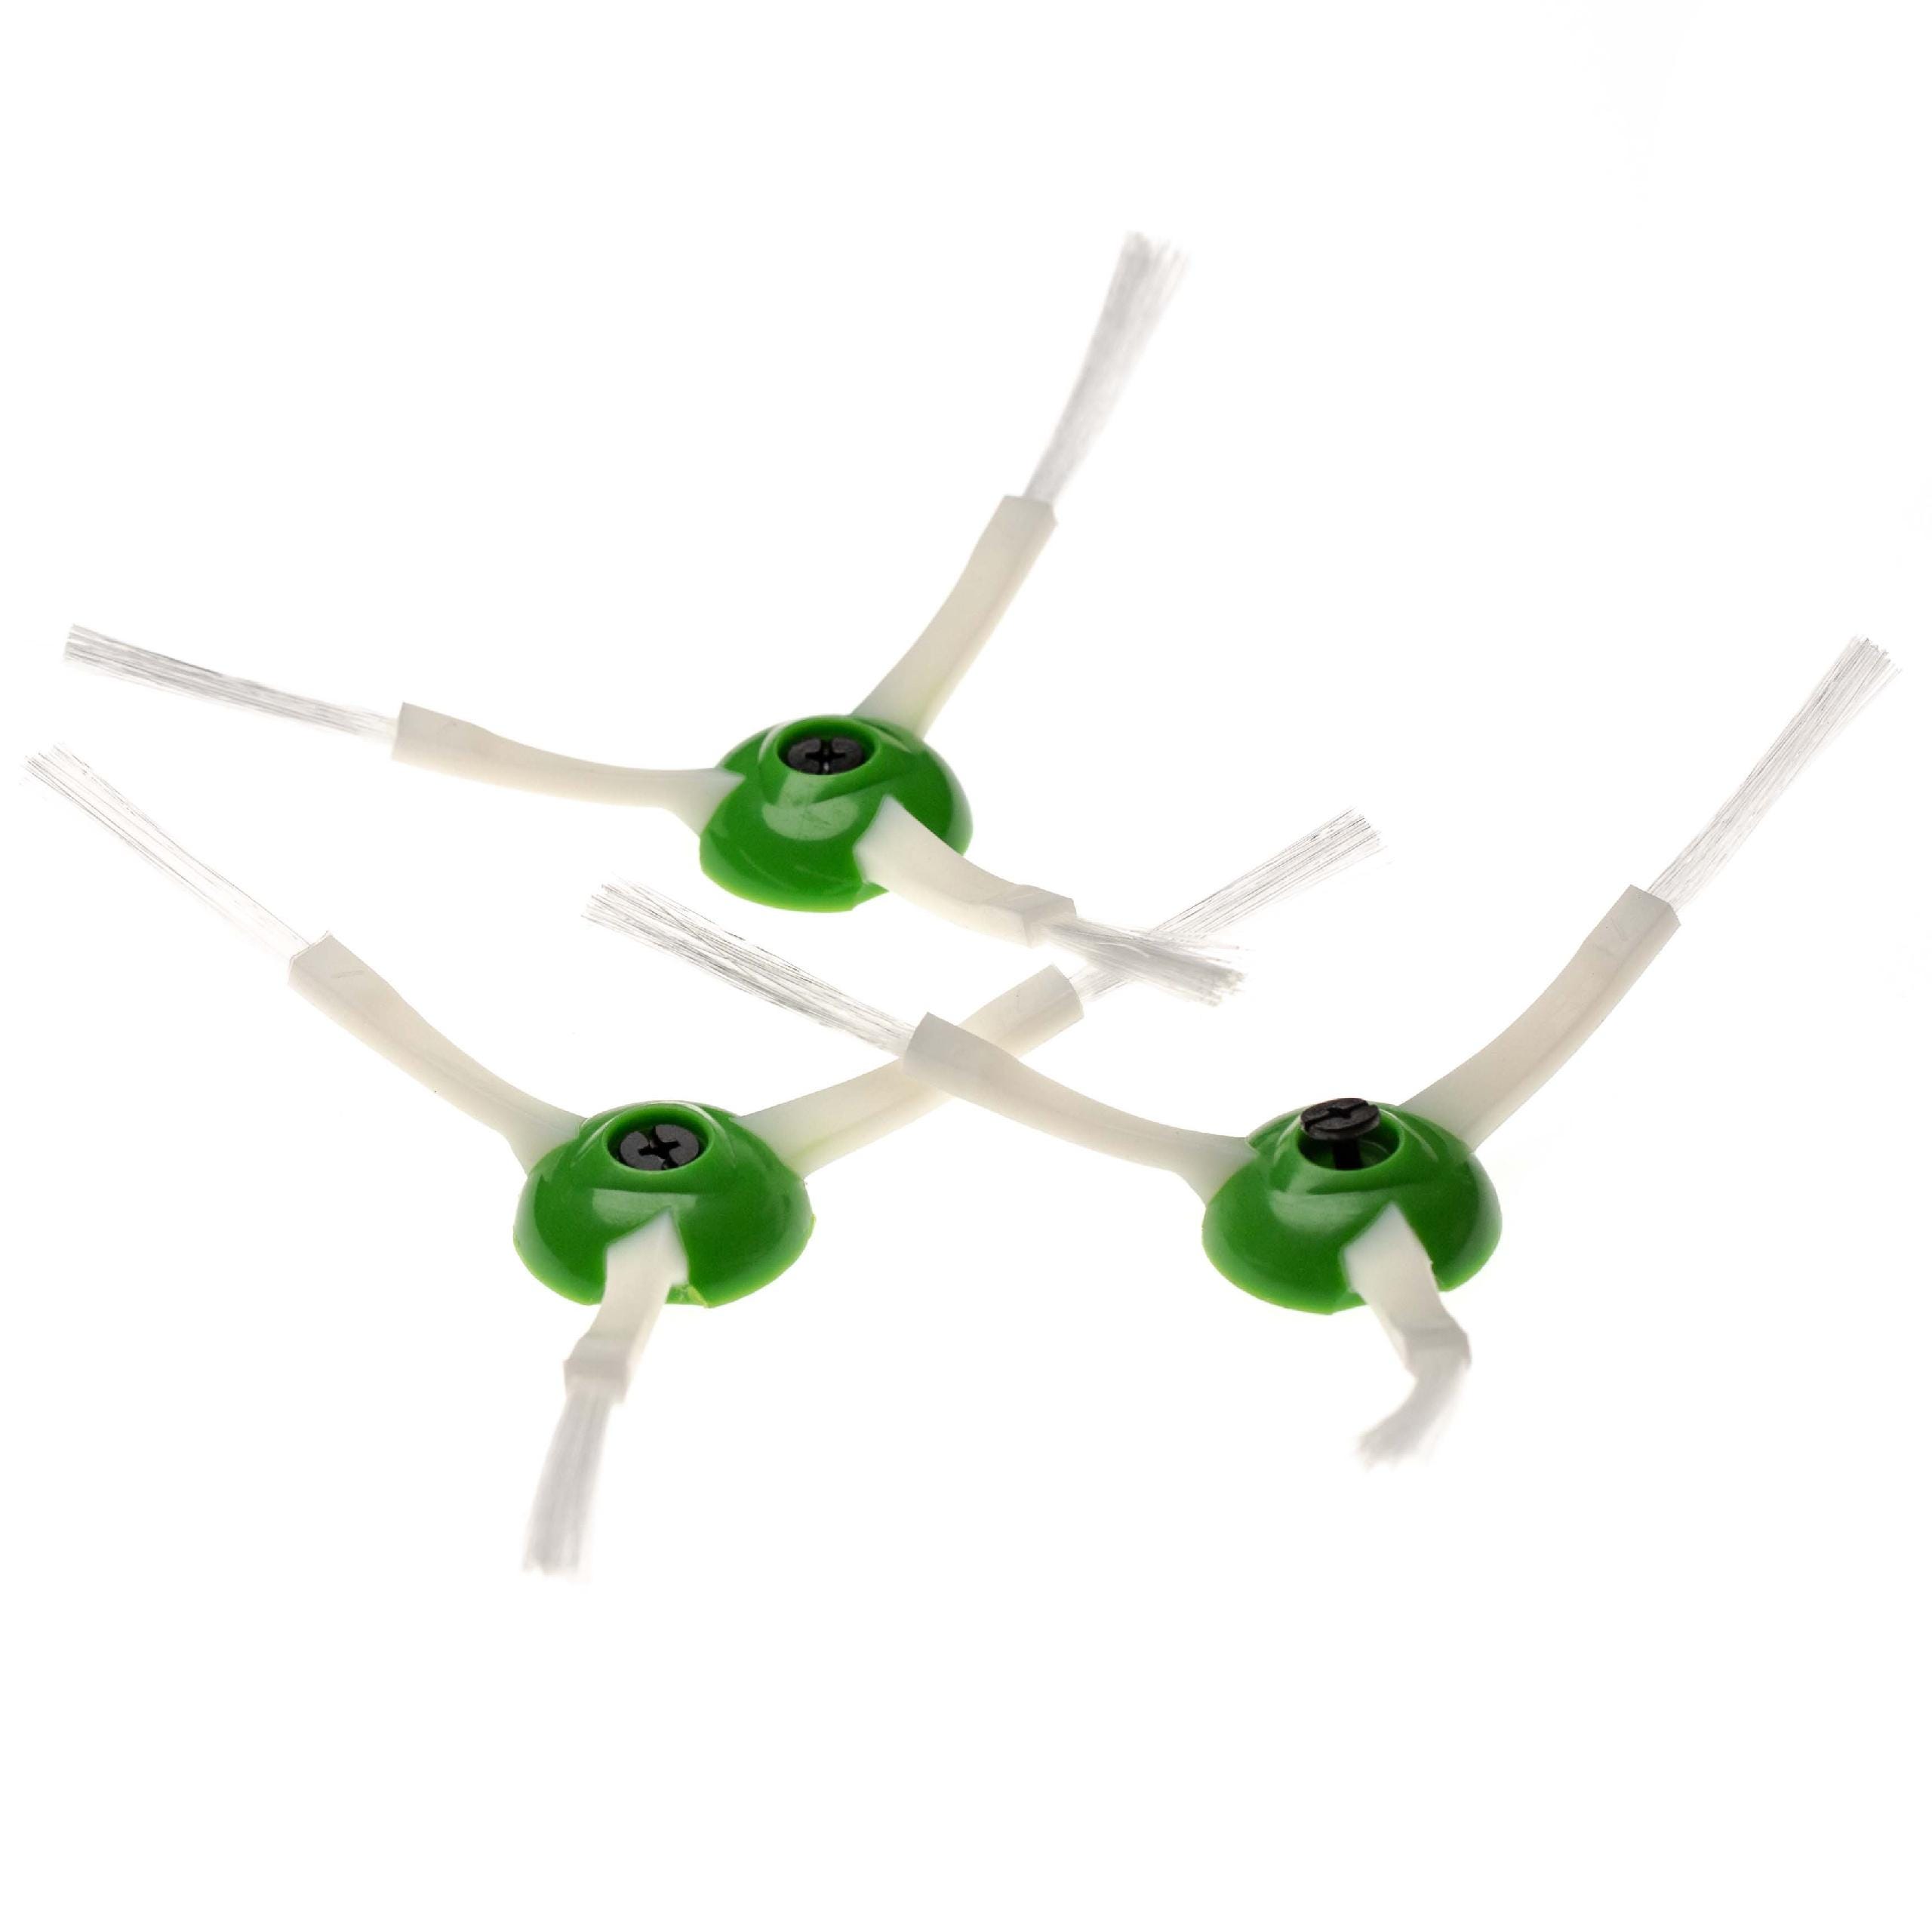 Vhbw set di spazzole 3 x spazzola laterale rotonda compatibile con iRobot  Roomba E5, E6, E7, i7, i7 Plus, i7+ robot aspirapolvere - bianco/verde